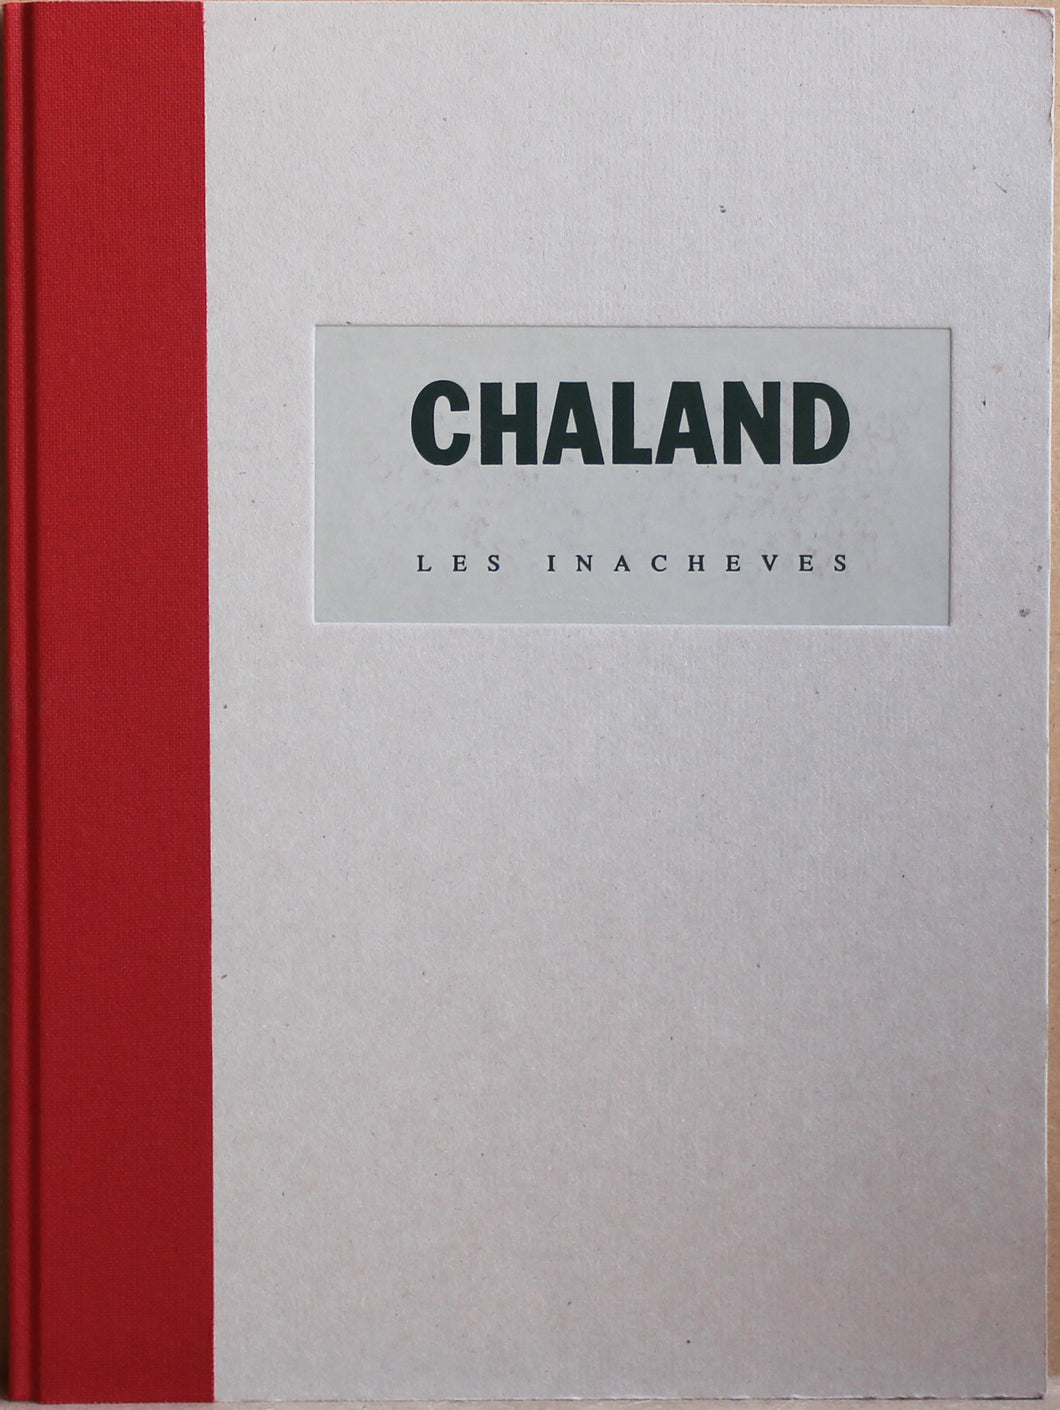 Chaland: Les Inacheves (Die Unvollendeten)